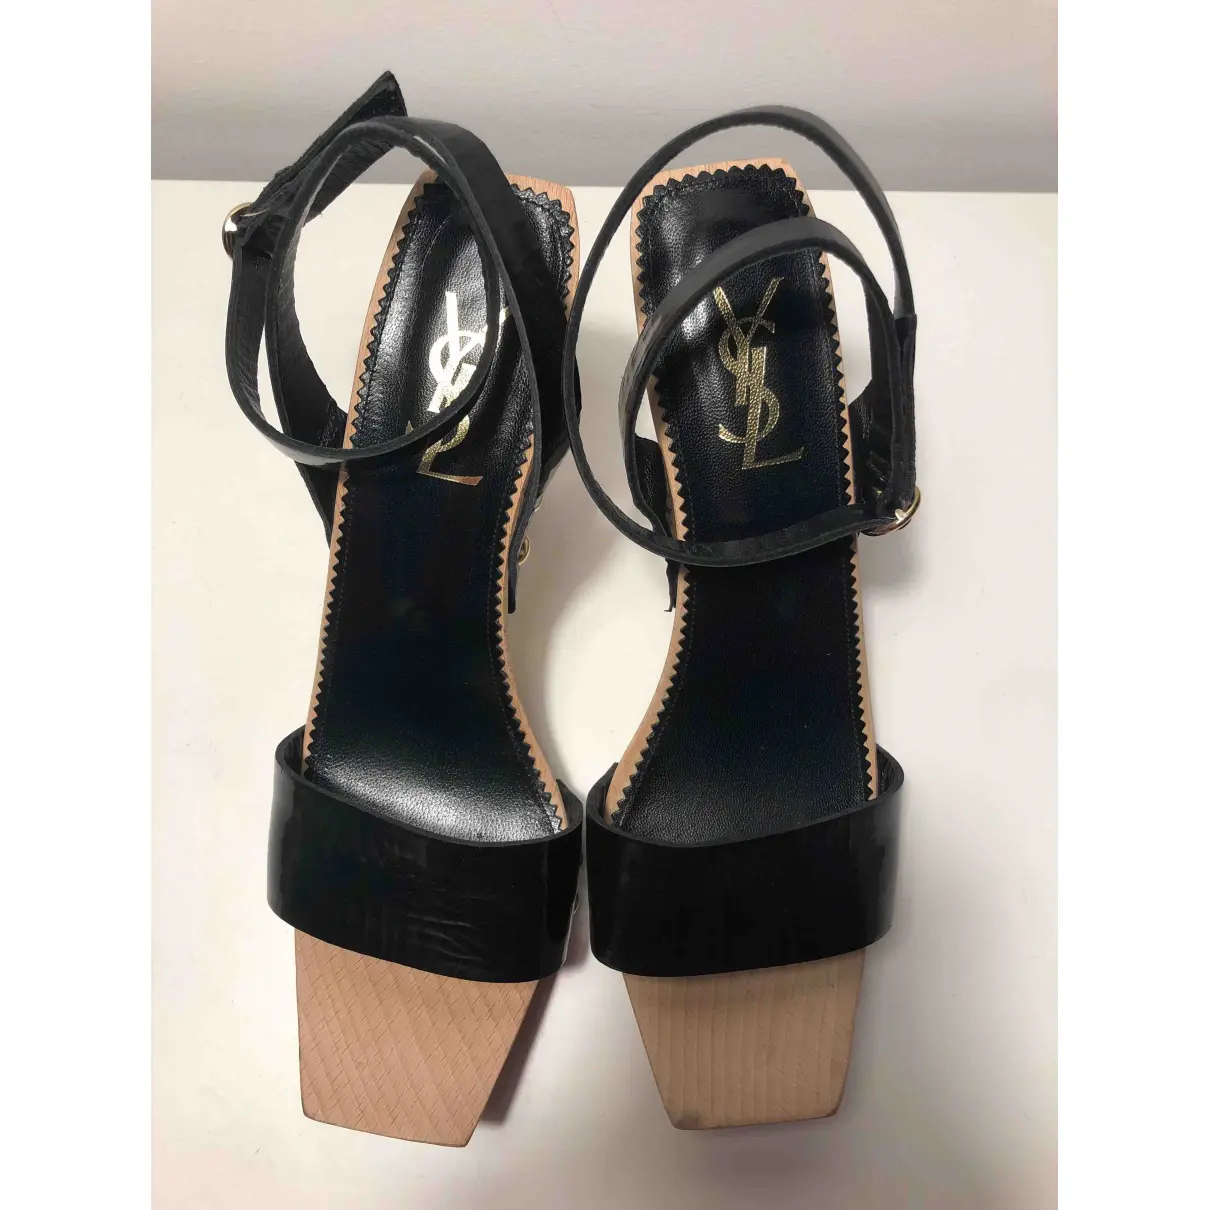 Buy Yves Saint Laurent Patent leather sandals online